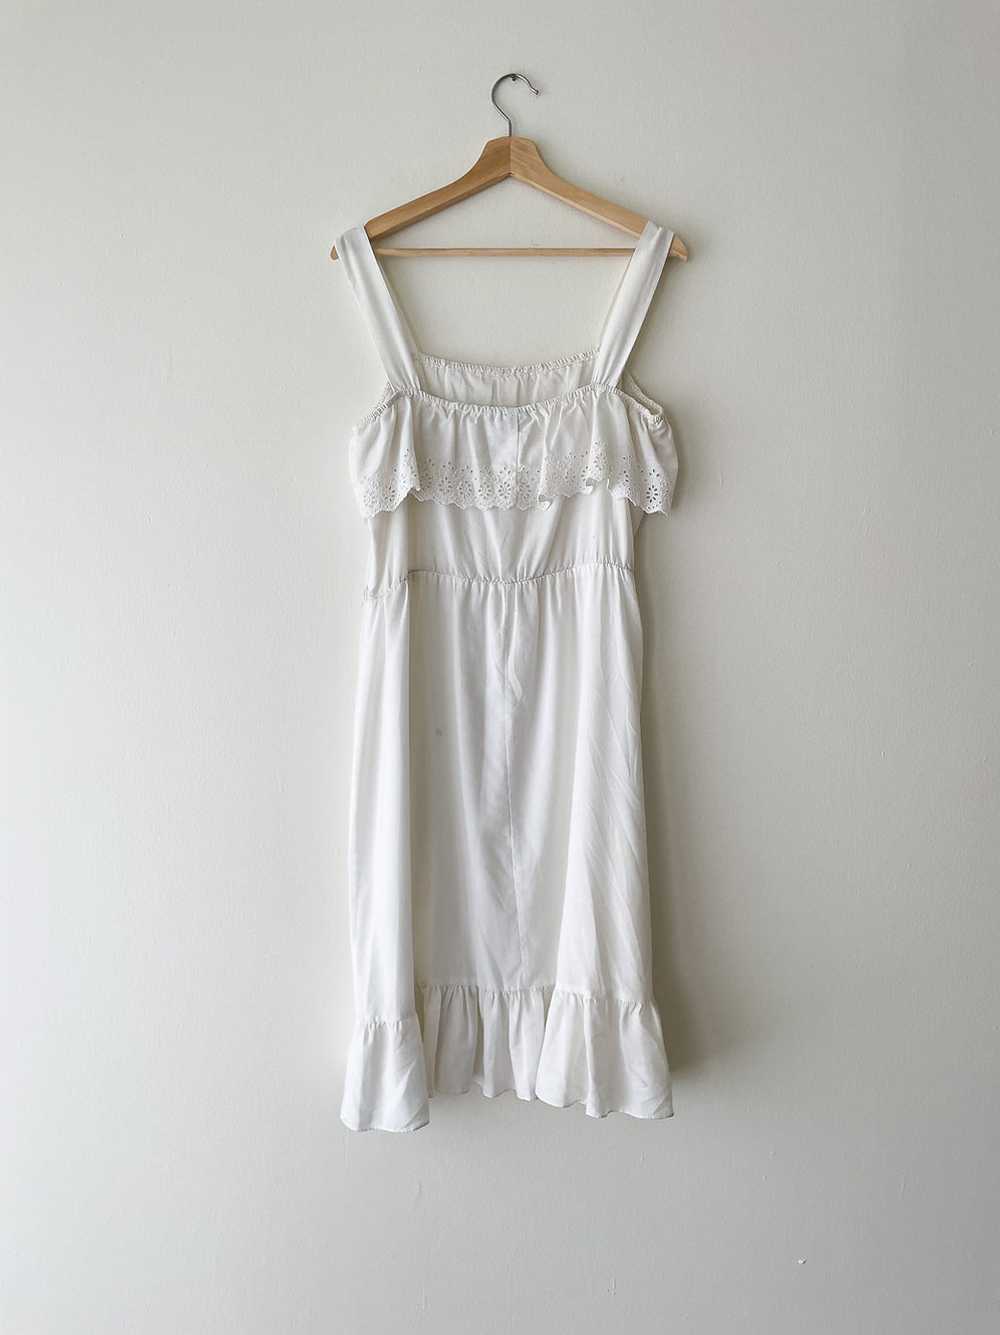 Cotton Eyelet Dress - image 3